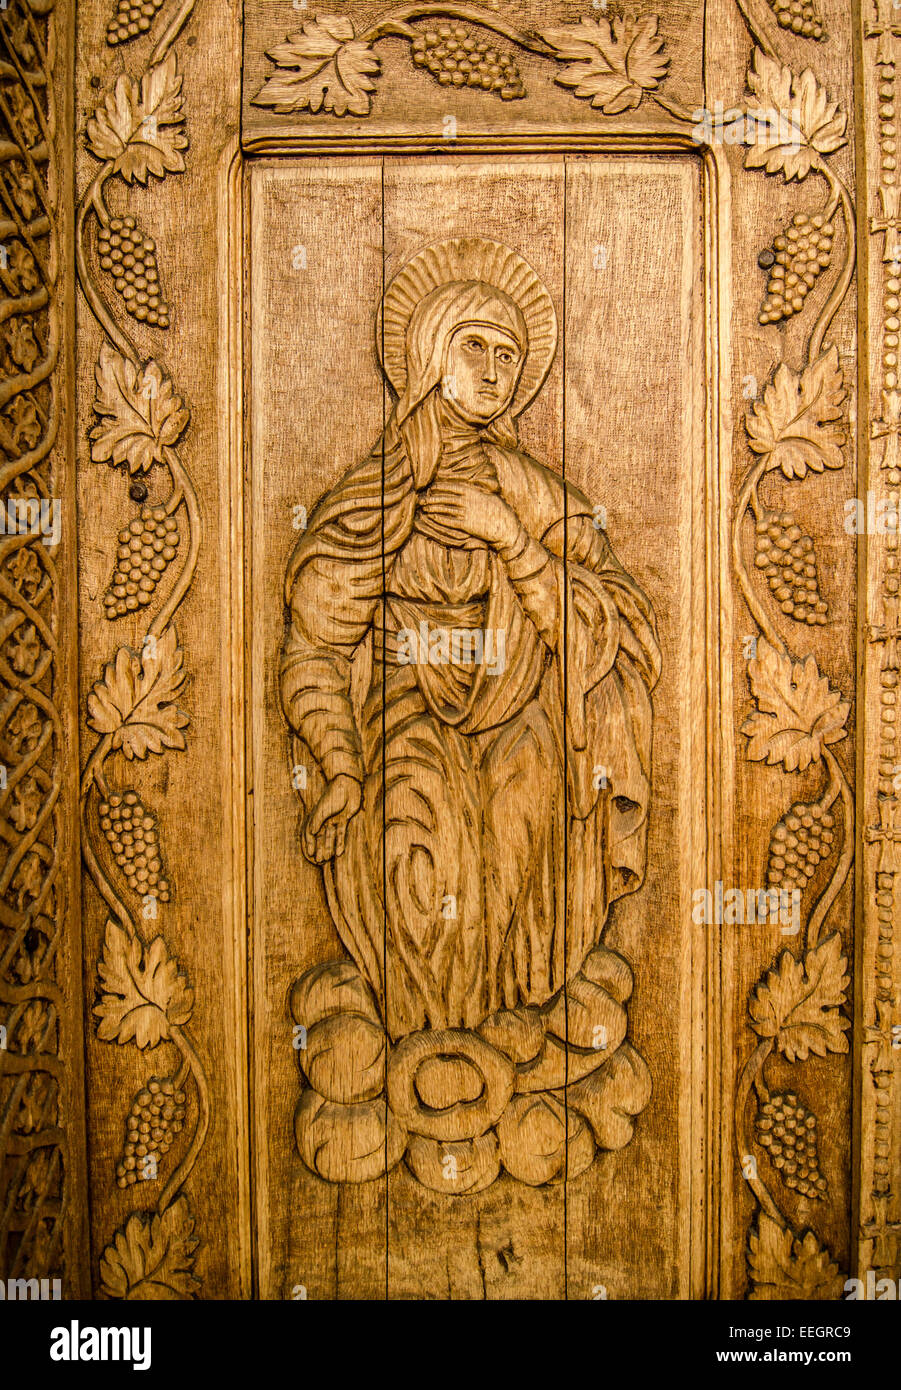 Maramures, Rumania: Madera esculpida sagrado icono en una iglesia ortodox rumana. Foto de stock